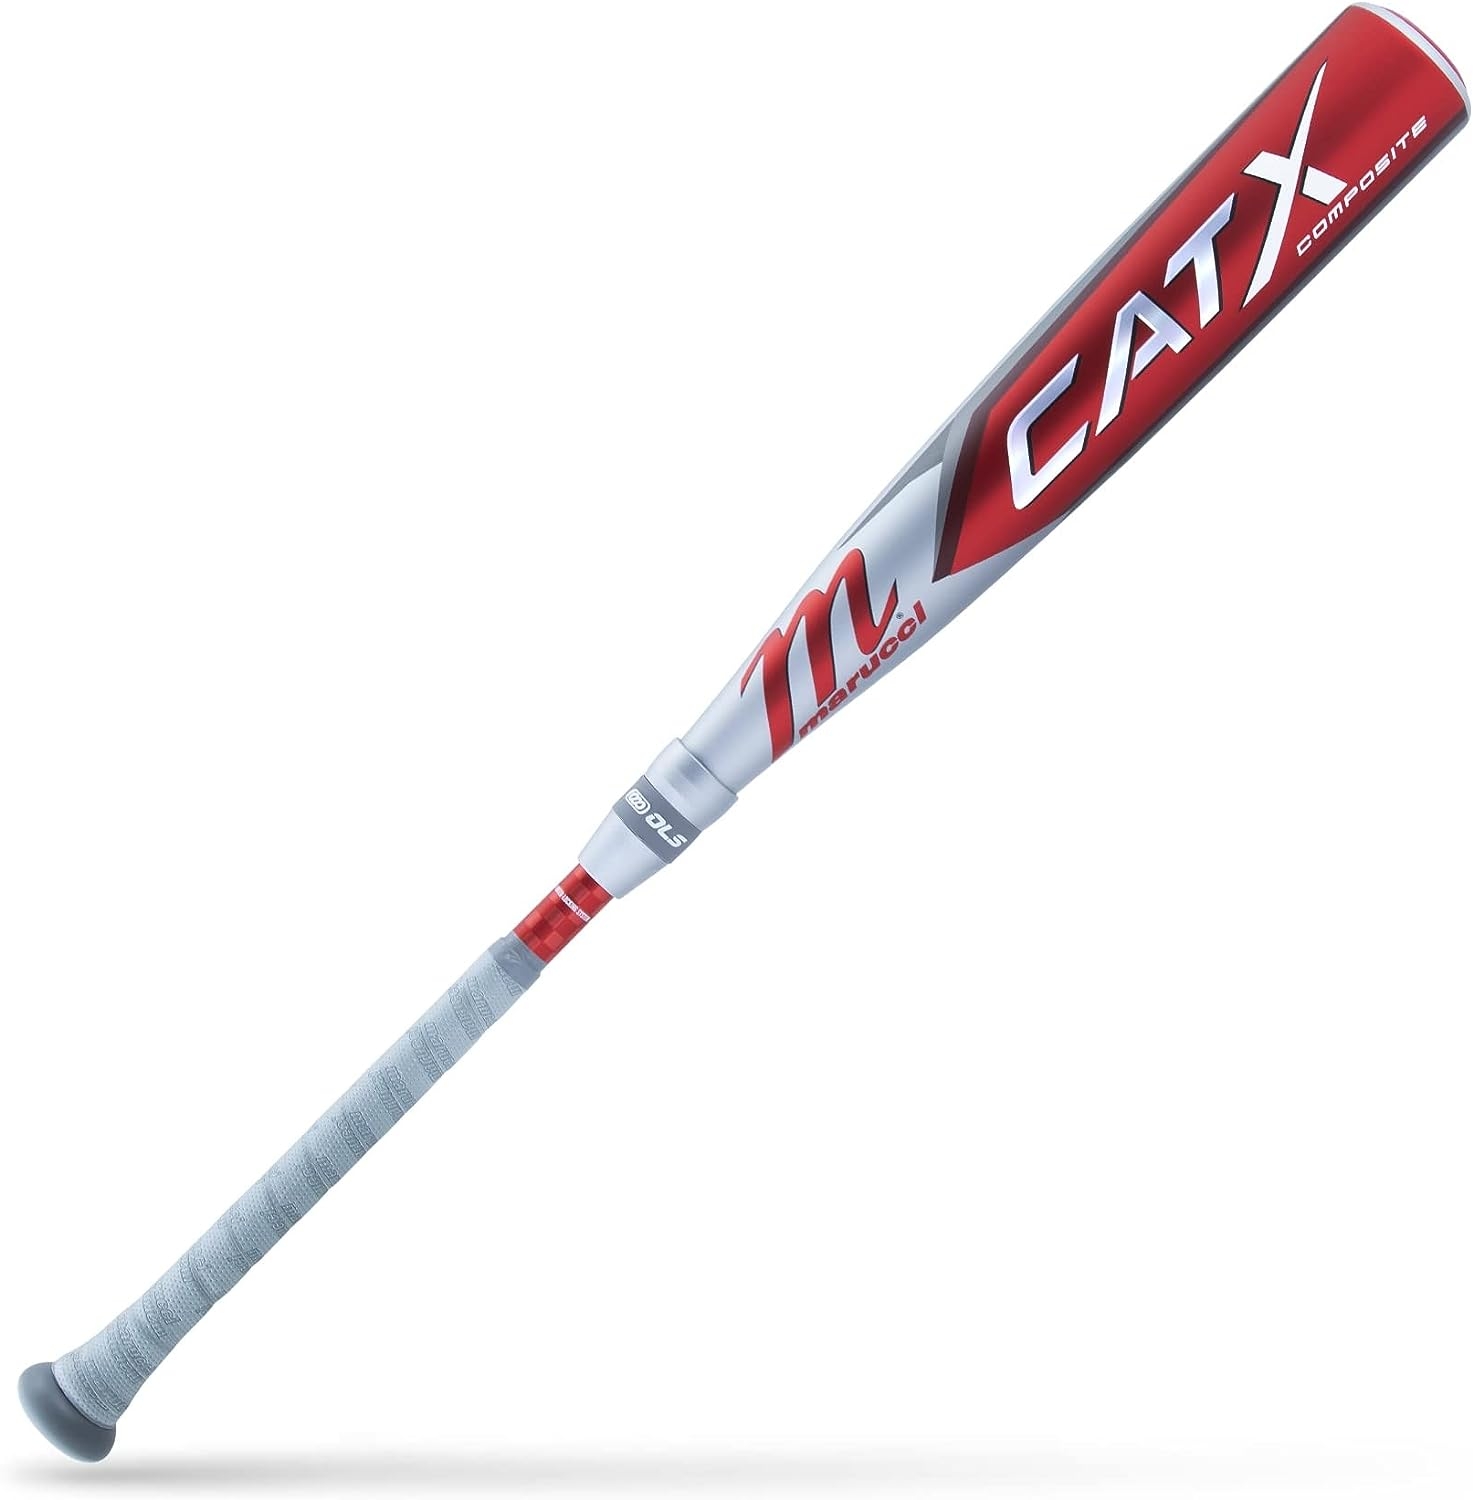 MARUCCI CATX Composite USSSA Senior League Baseball BAT, 2 3/4″ Barrel, (-5, -8, and -10)   price checker   price checker